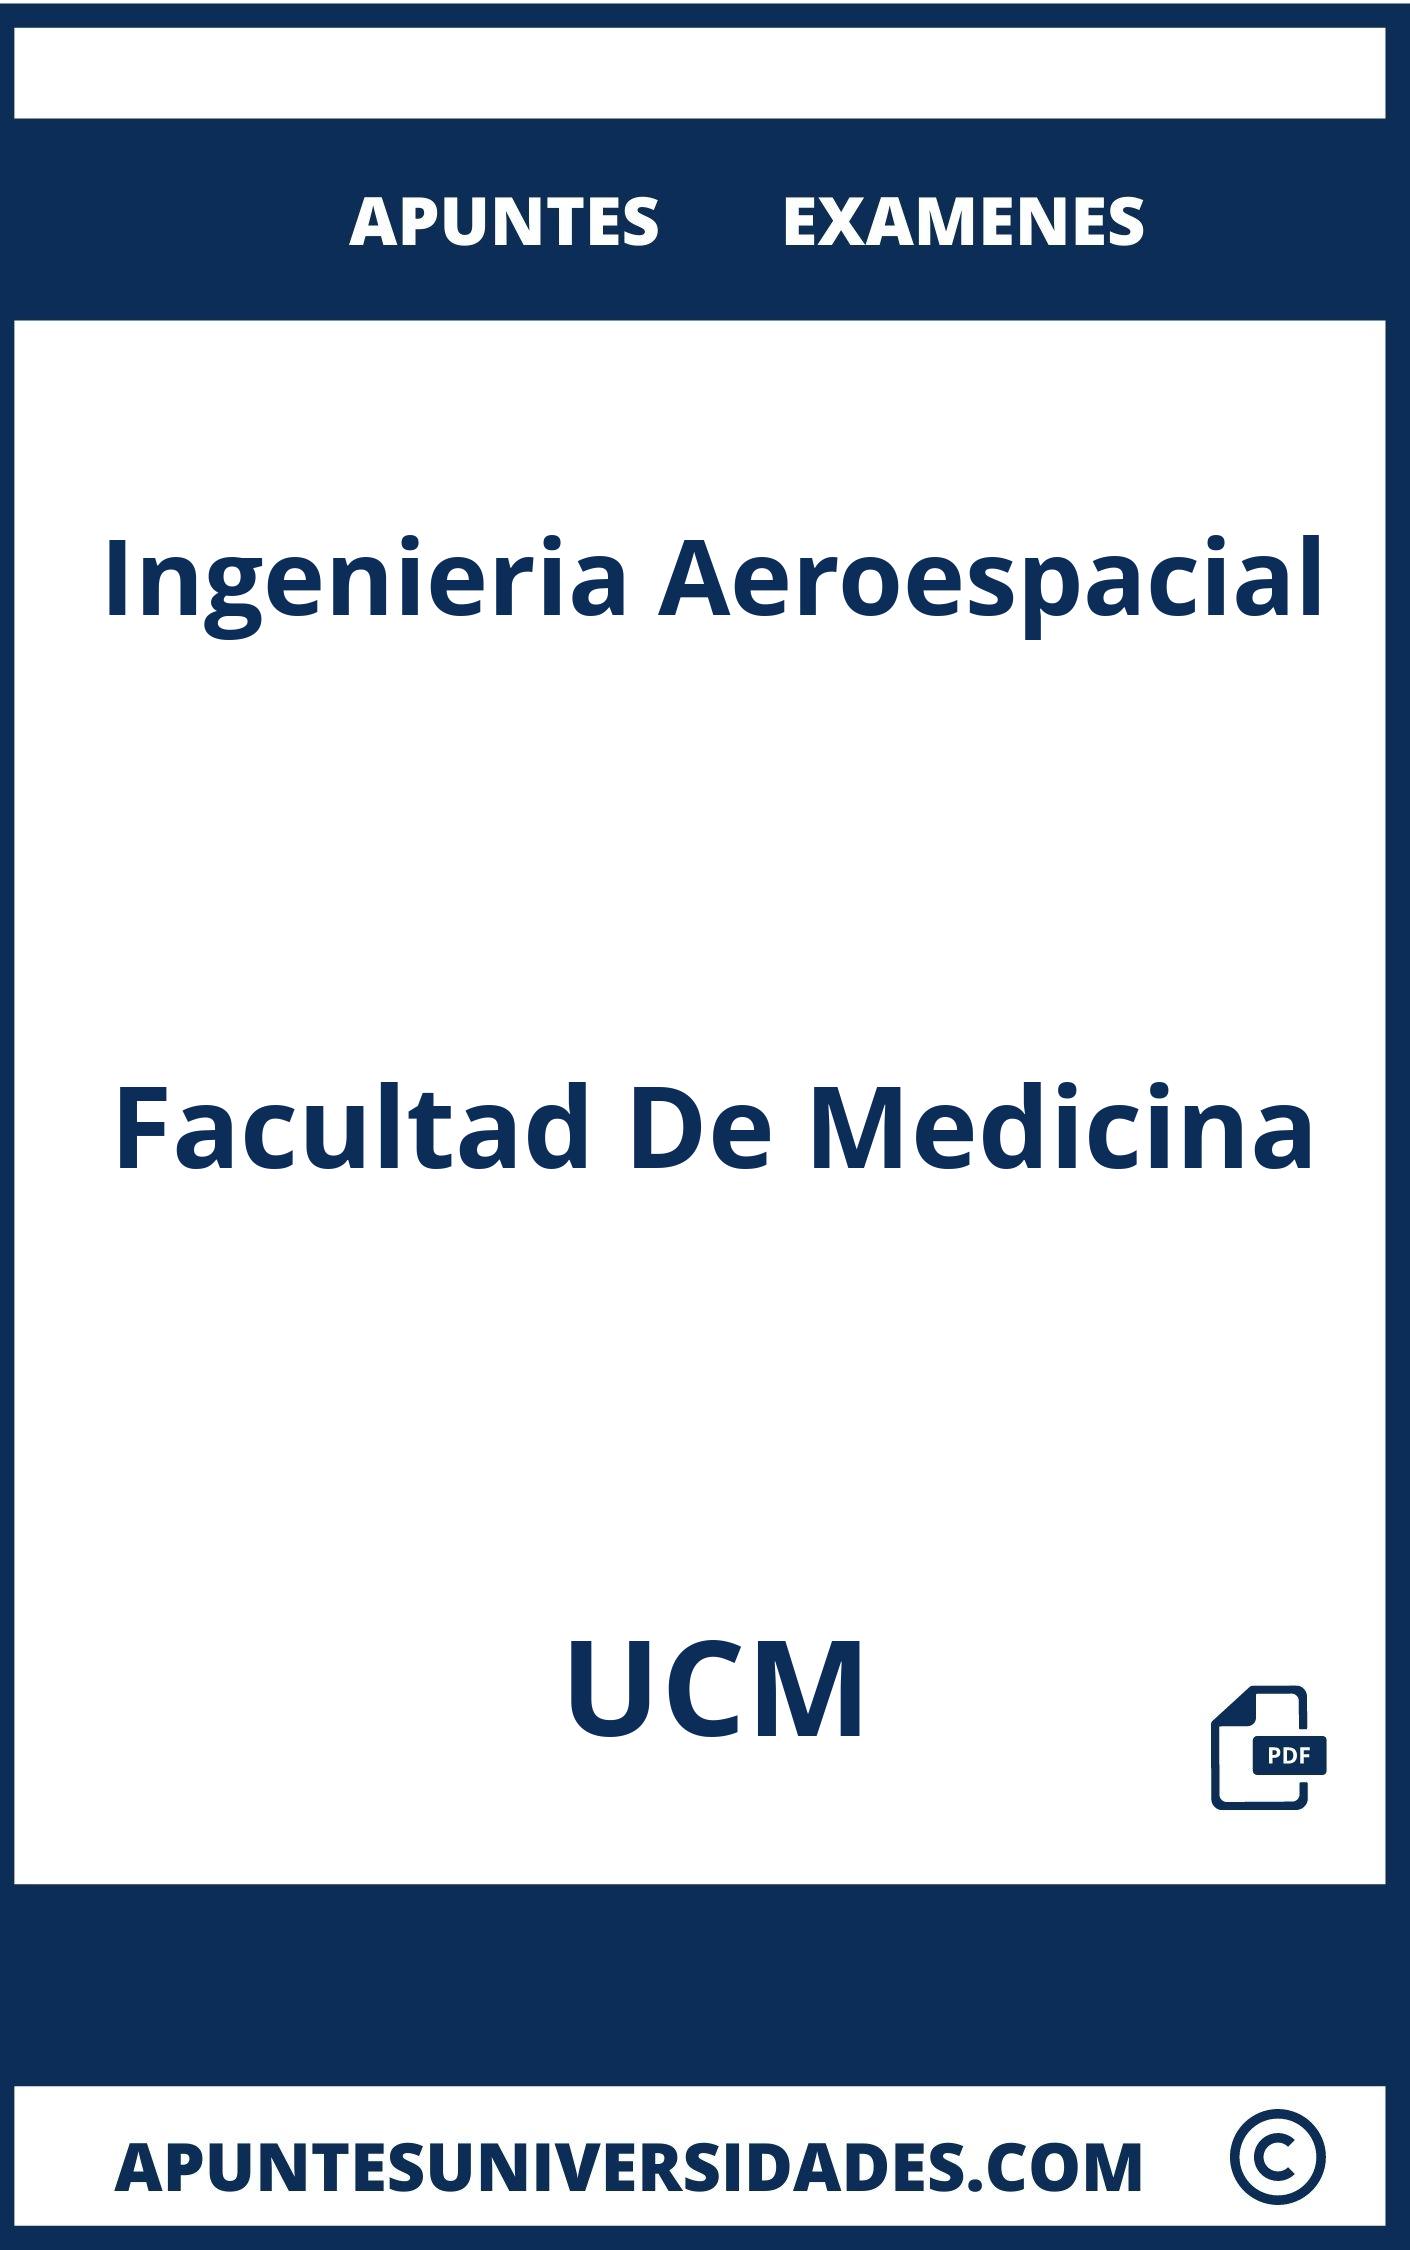 Apuntes y Examenes de Ingenieria Aeroespacial UCM